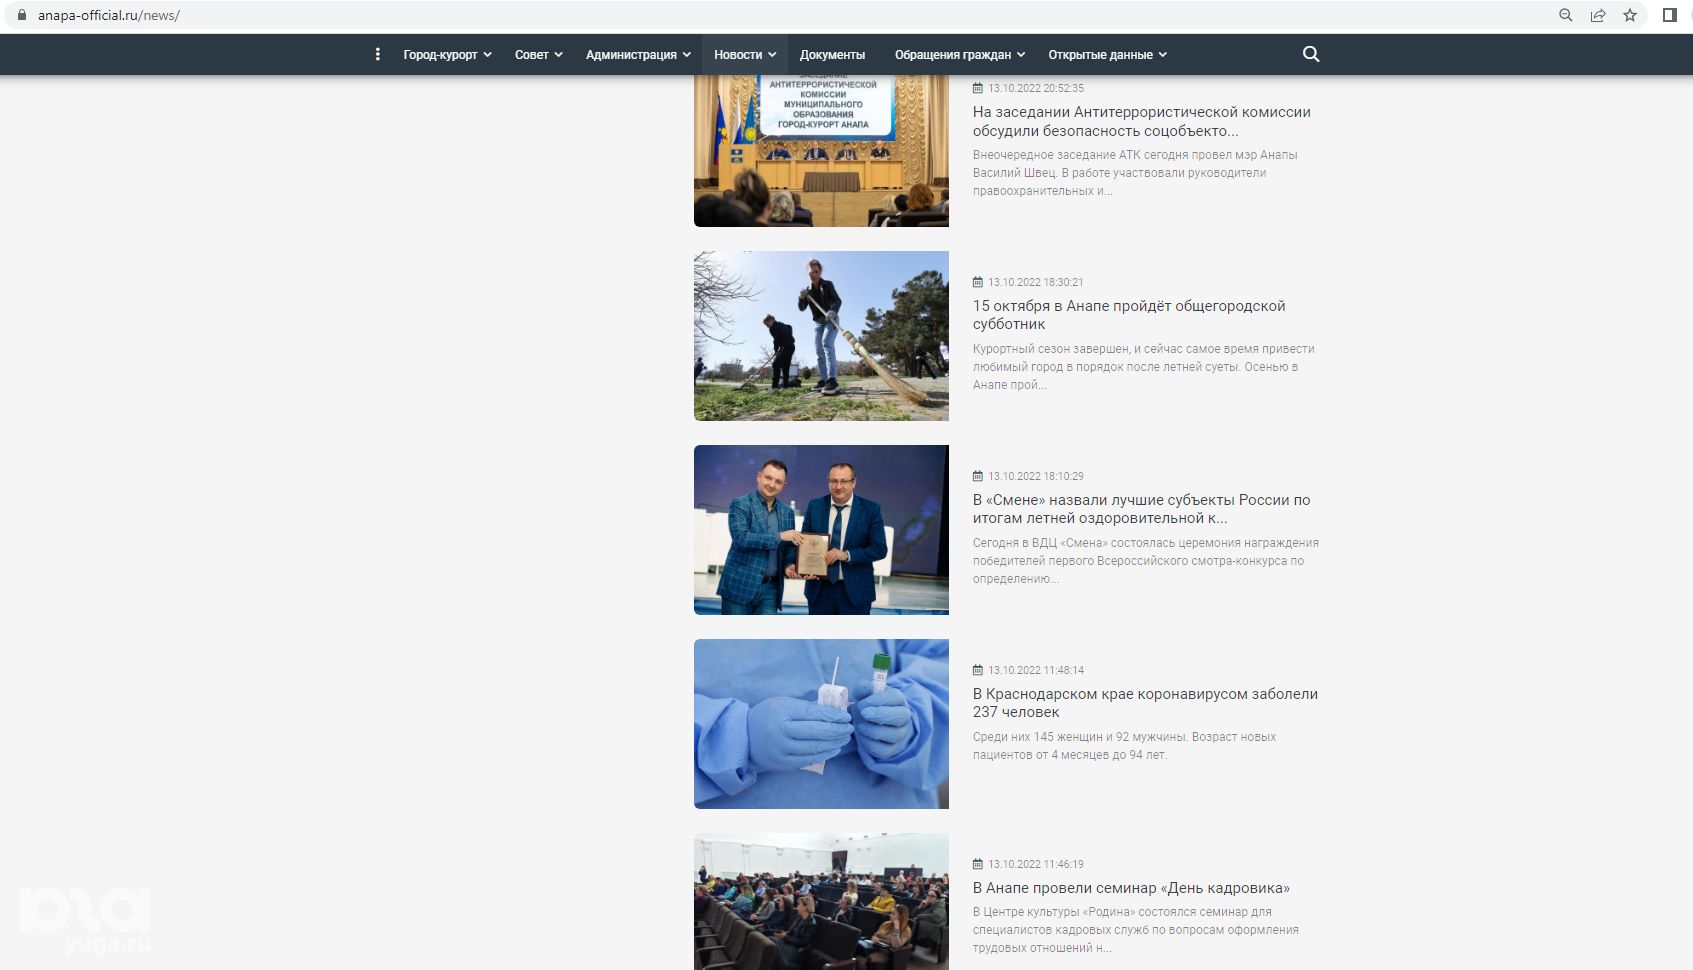 Скриншот страницы официального сайта г. Анапы © https://www.anapa-official.ru/news/